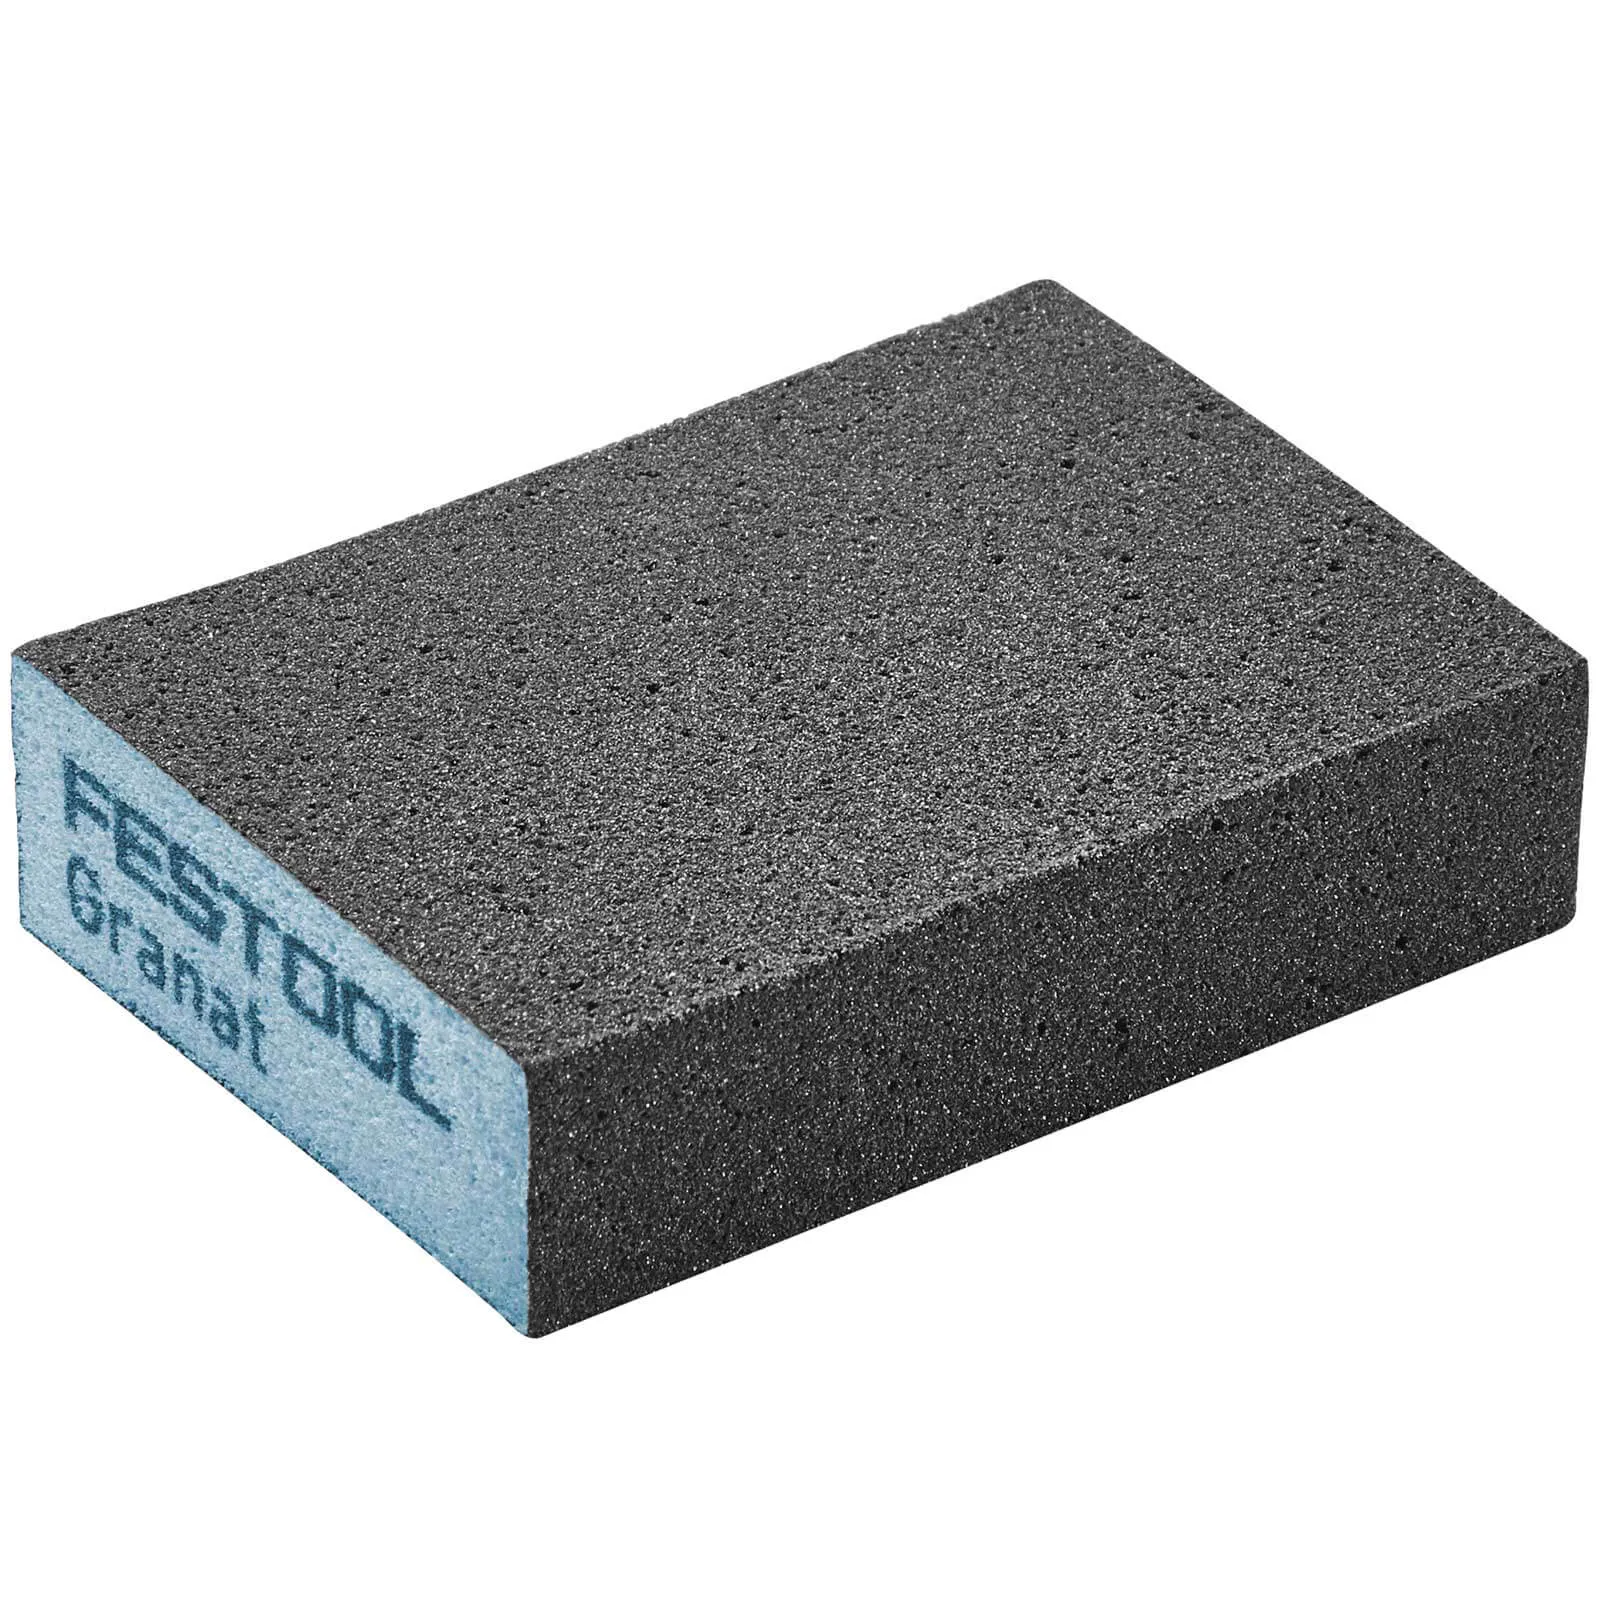 Festool Abrasive Hand Sanding Sponge Block - 120g, Pack of 6